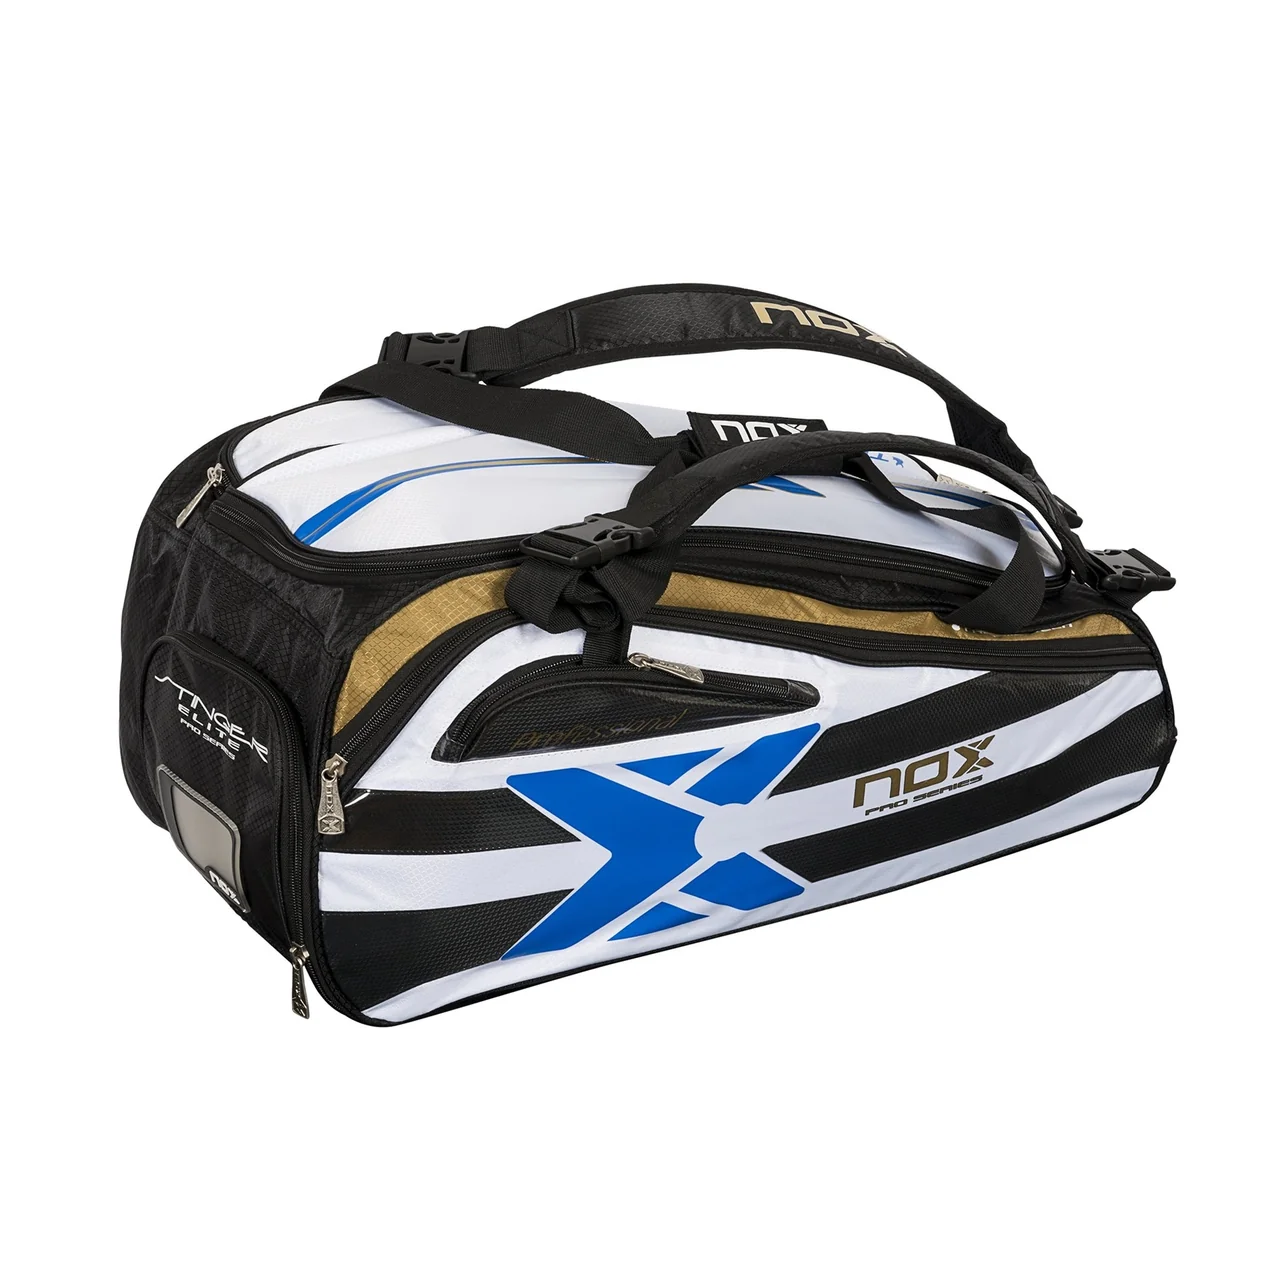 Nox Elite Padel Bag